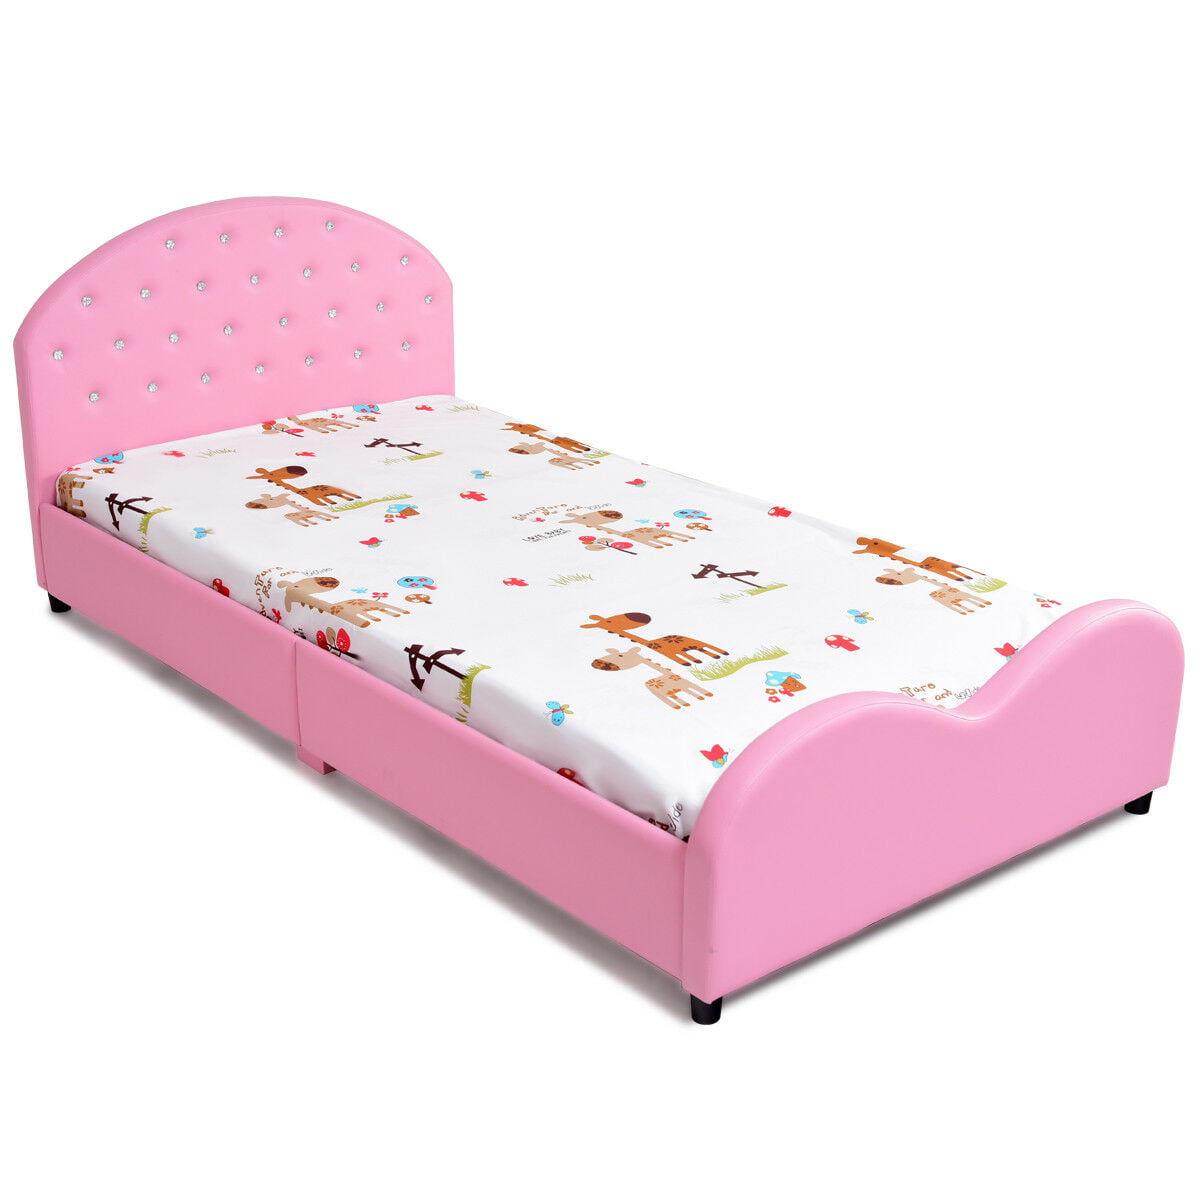 Costway Kids Children PU Upholstered Platform Wooden Princess Bed Bedroom Furniture Pink